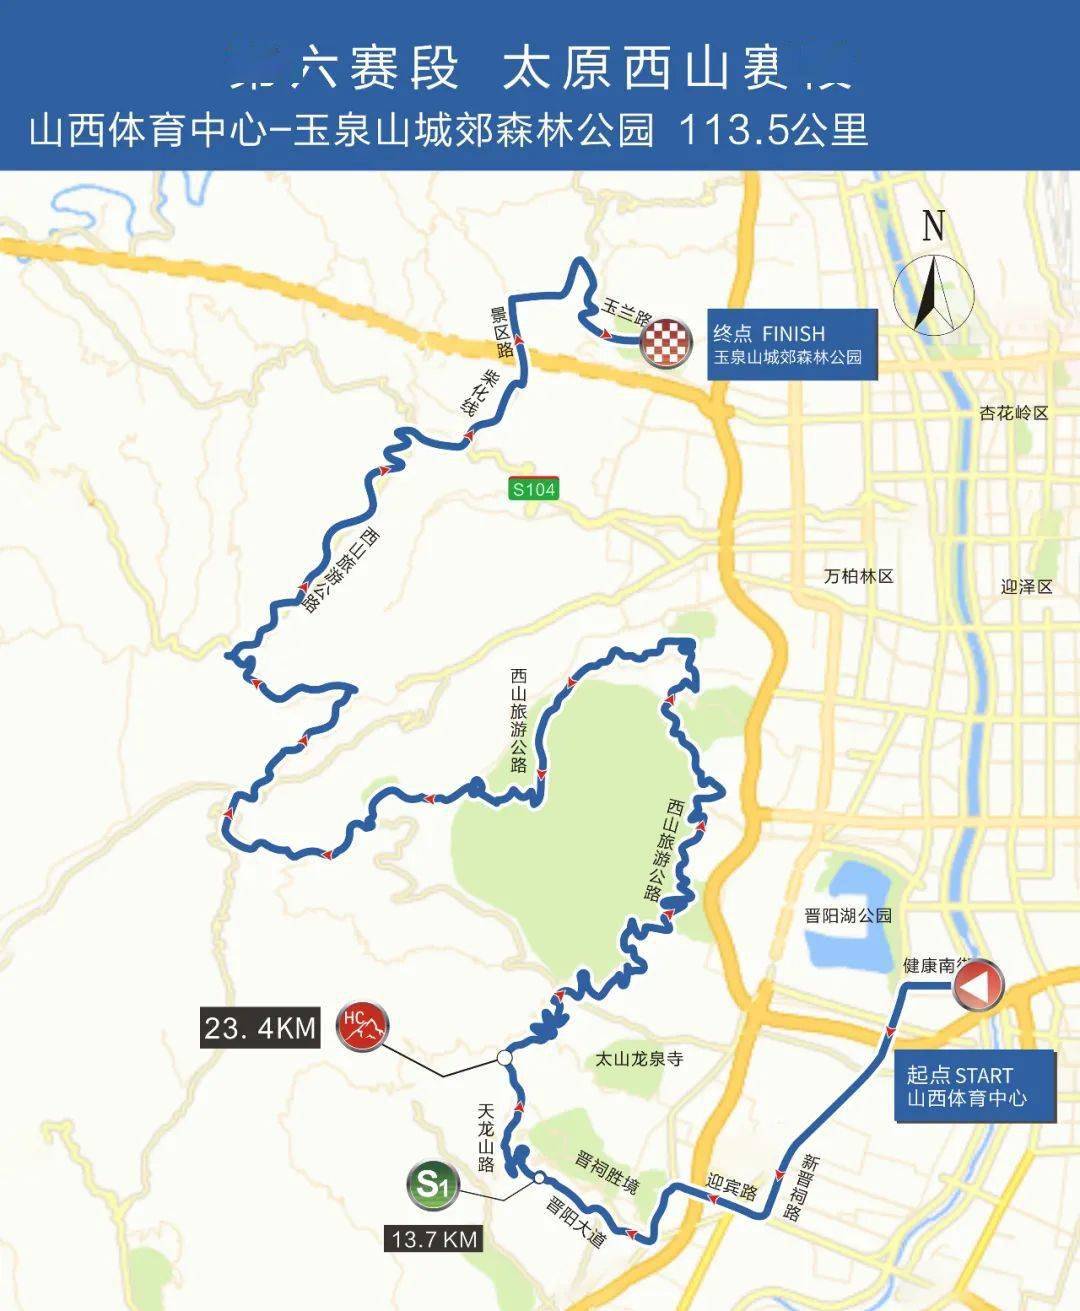 环太原国际公路自行车赛10月11日开赛